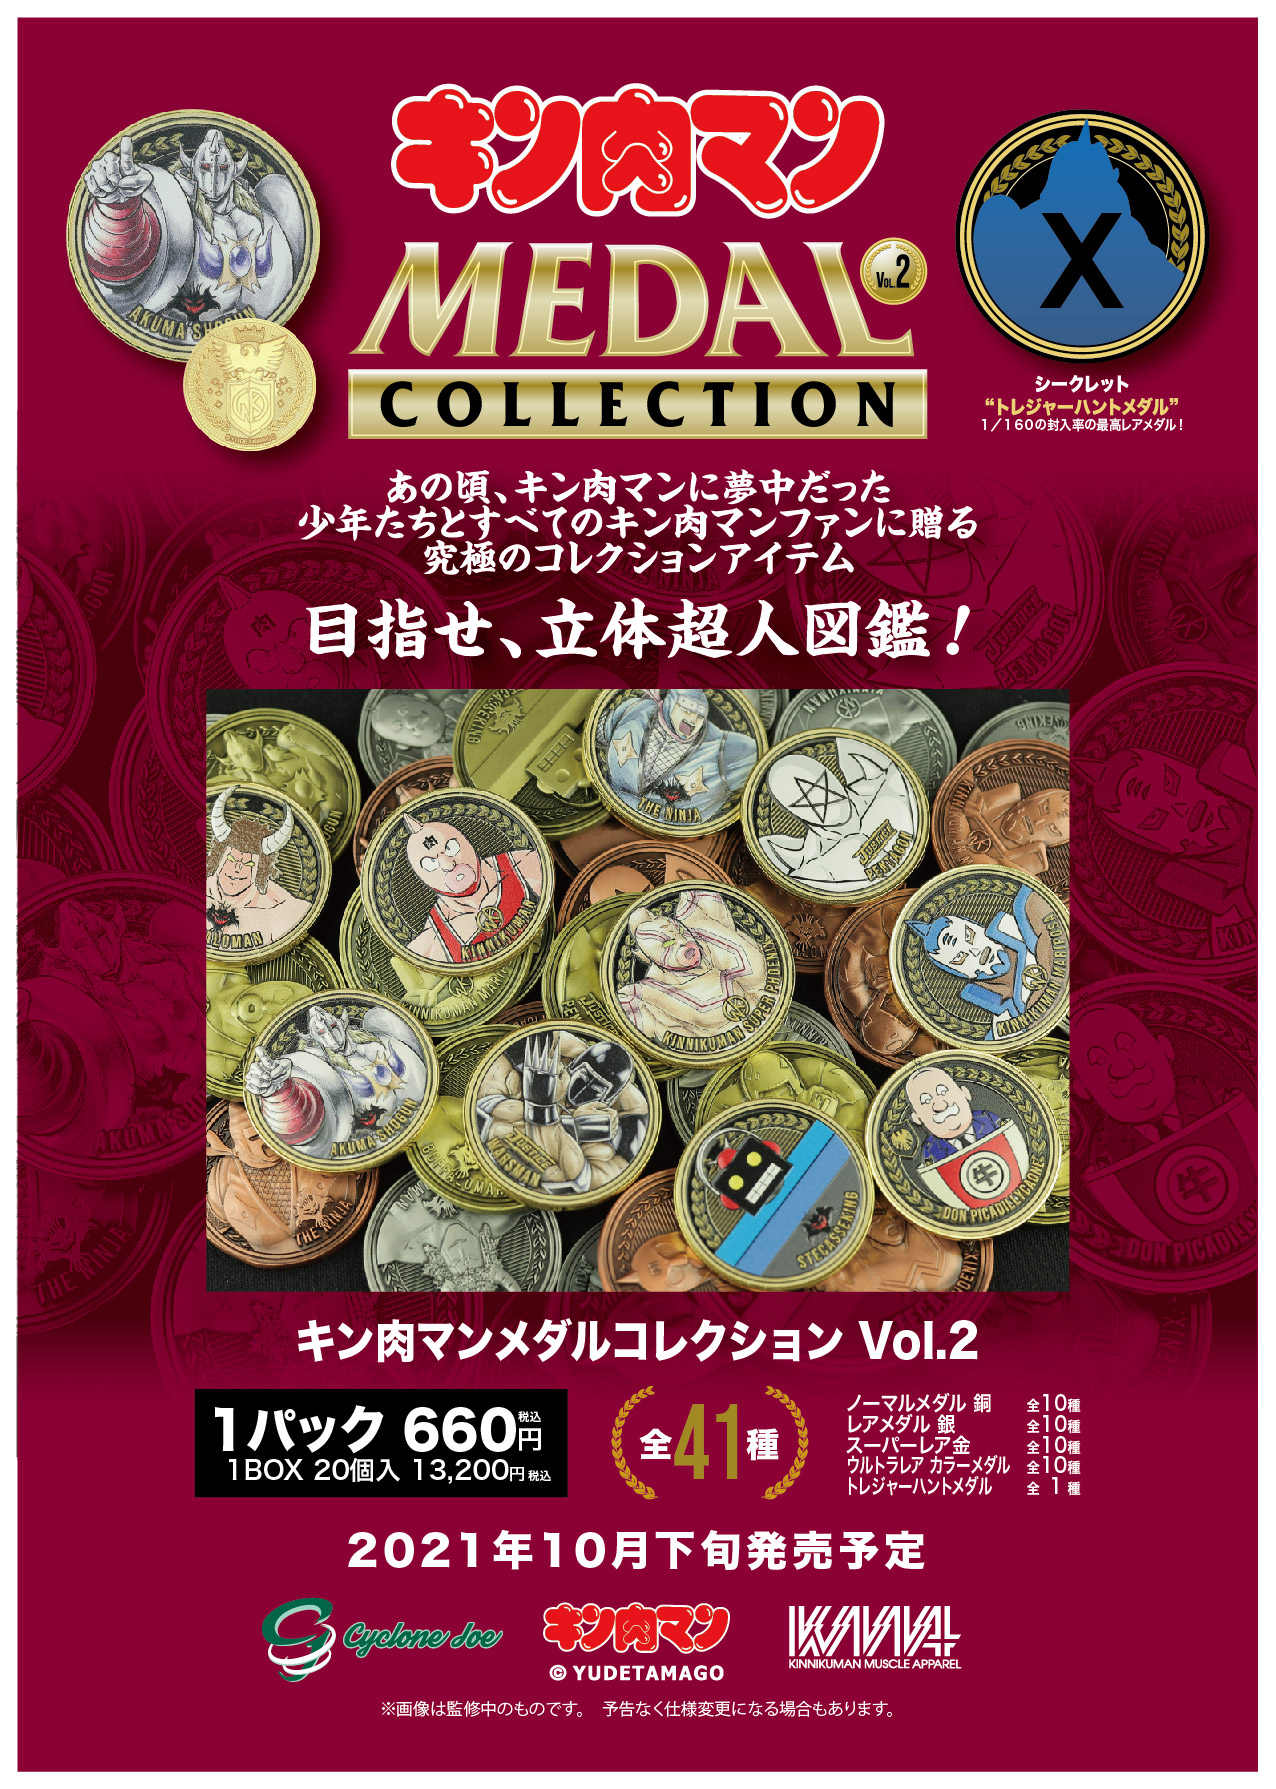 KMA×CYCLONEJOE『キン肉マンメダルコレクション VOL.2』 めざせ立体超人図鑑コンプリート！1BOX(20個入り)の購入特典はなんと 金ピカ KIN(金)肉メダルは『ゆでたまご先生』！ のサブ画像33